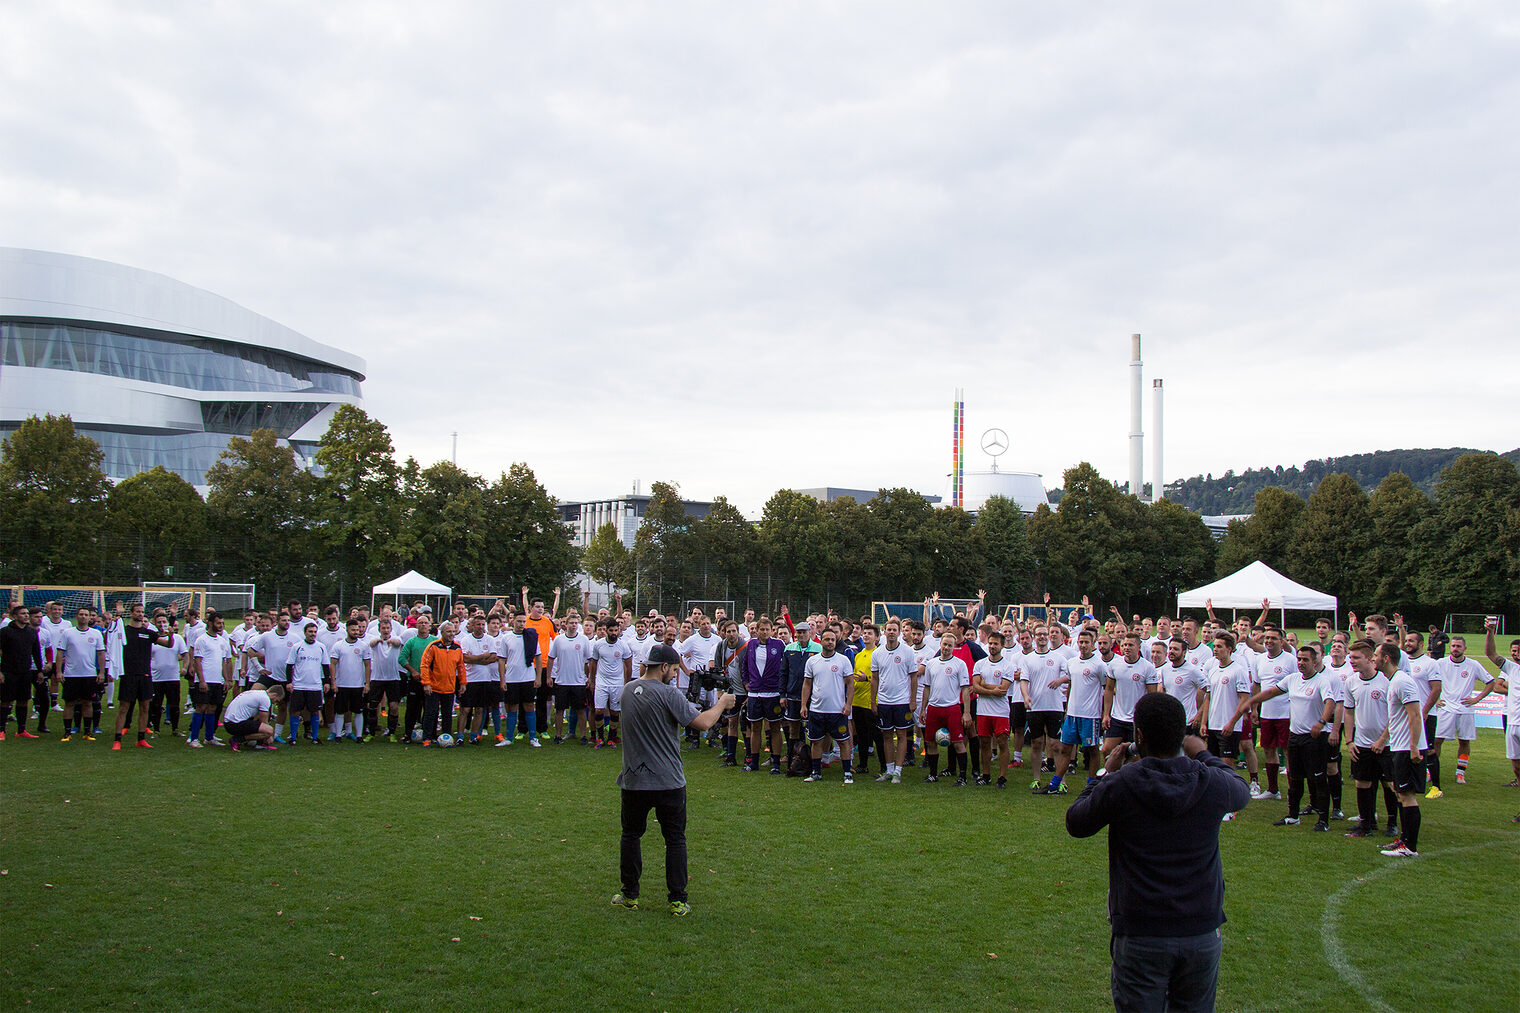 Stolze 46 Mannschaften traten beim Handwerkercup im Stuttgarter Neckarpark auf dem Rasen gegeneinander an.